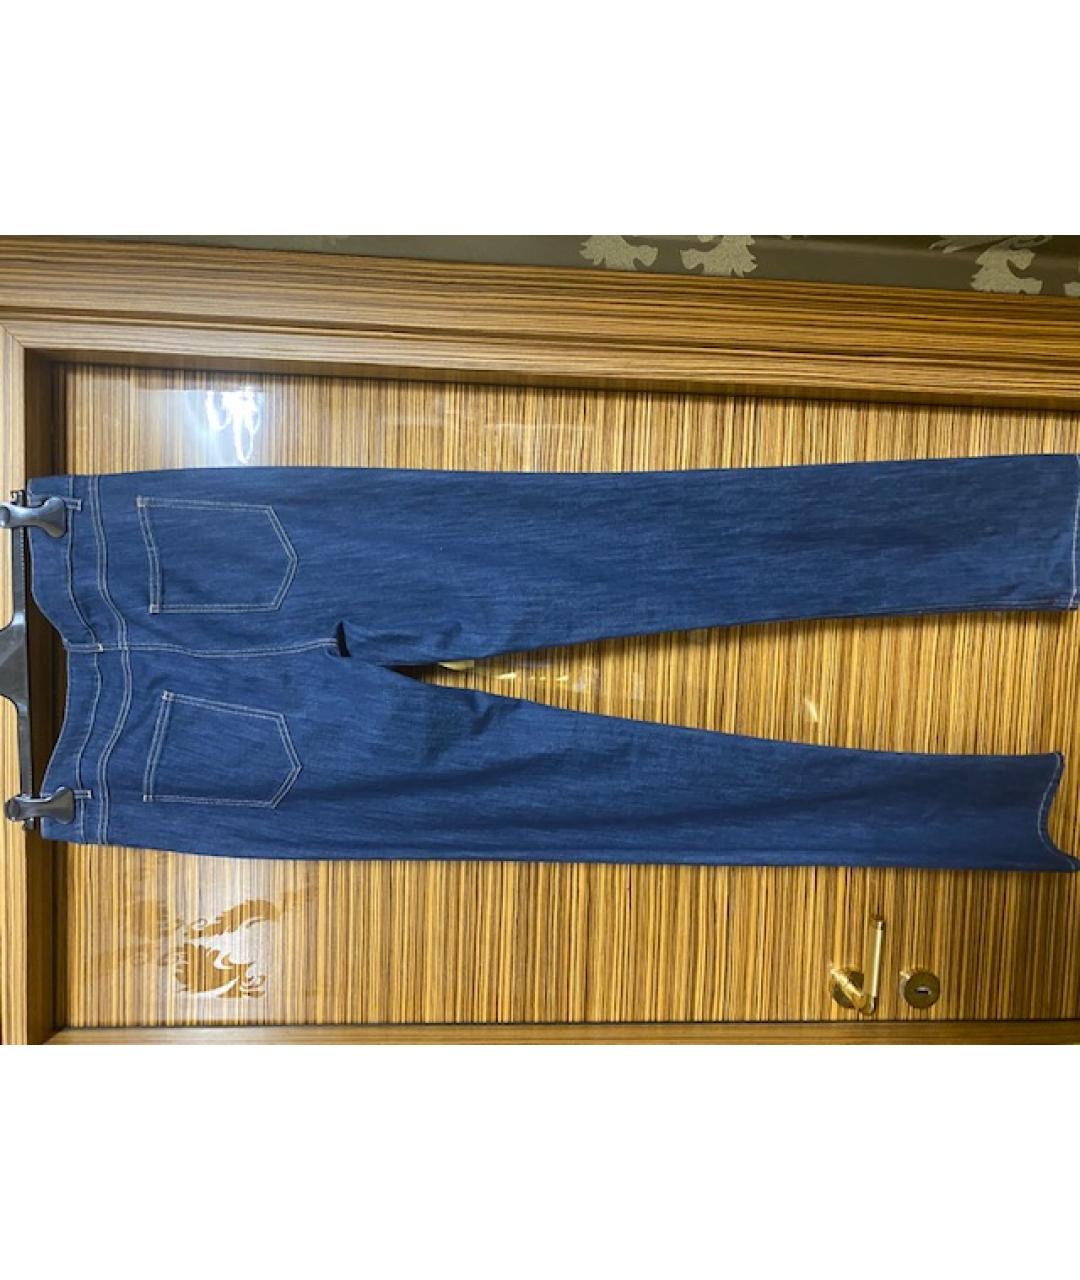 GIORGIO GRATI Синие хлопко-эластановые прямые джинсы, фото 2